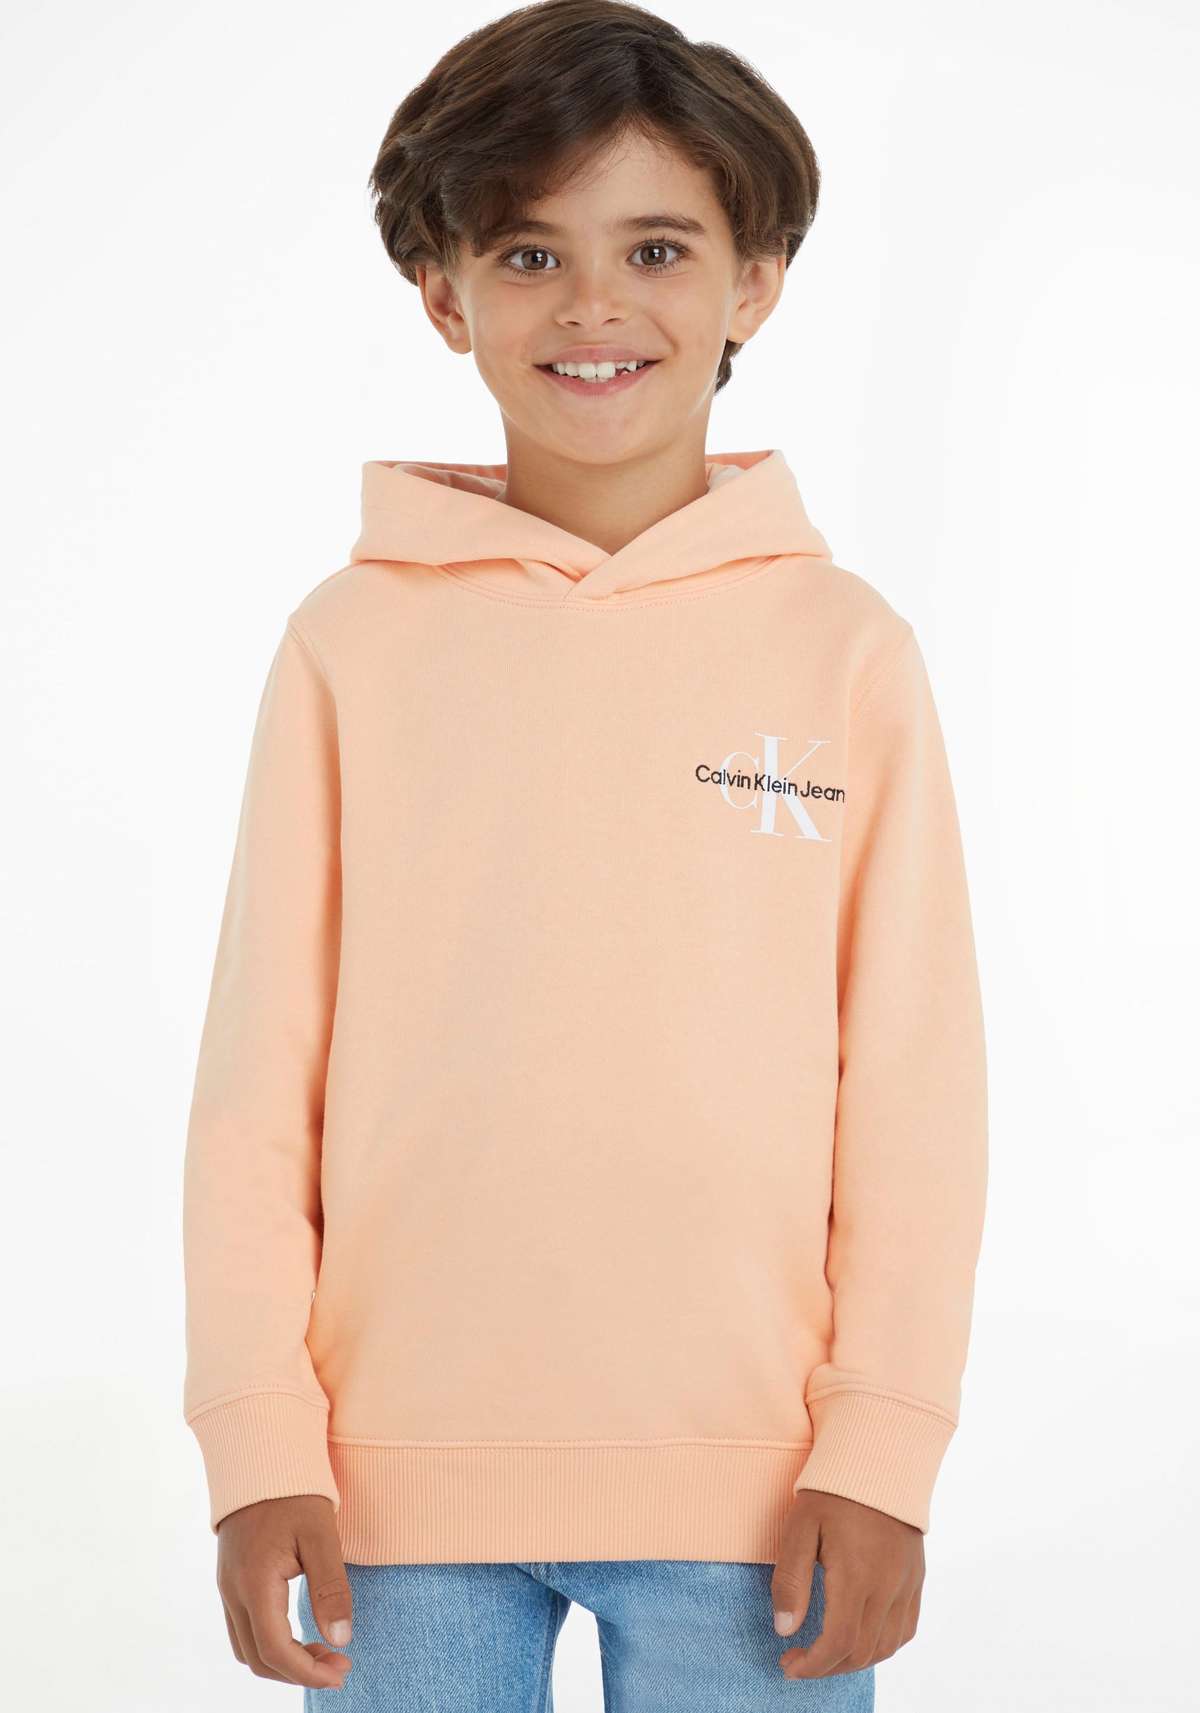 Толстовка с капюшоном, детская Kids Junior MiniMe, с вышивкой логотипа Calvin Klein на груди